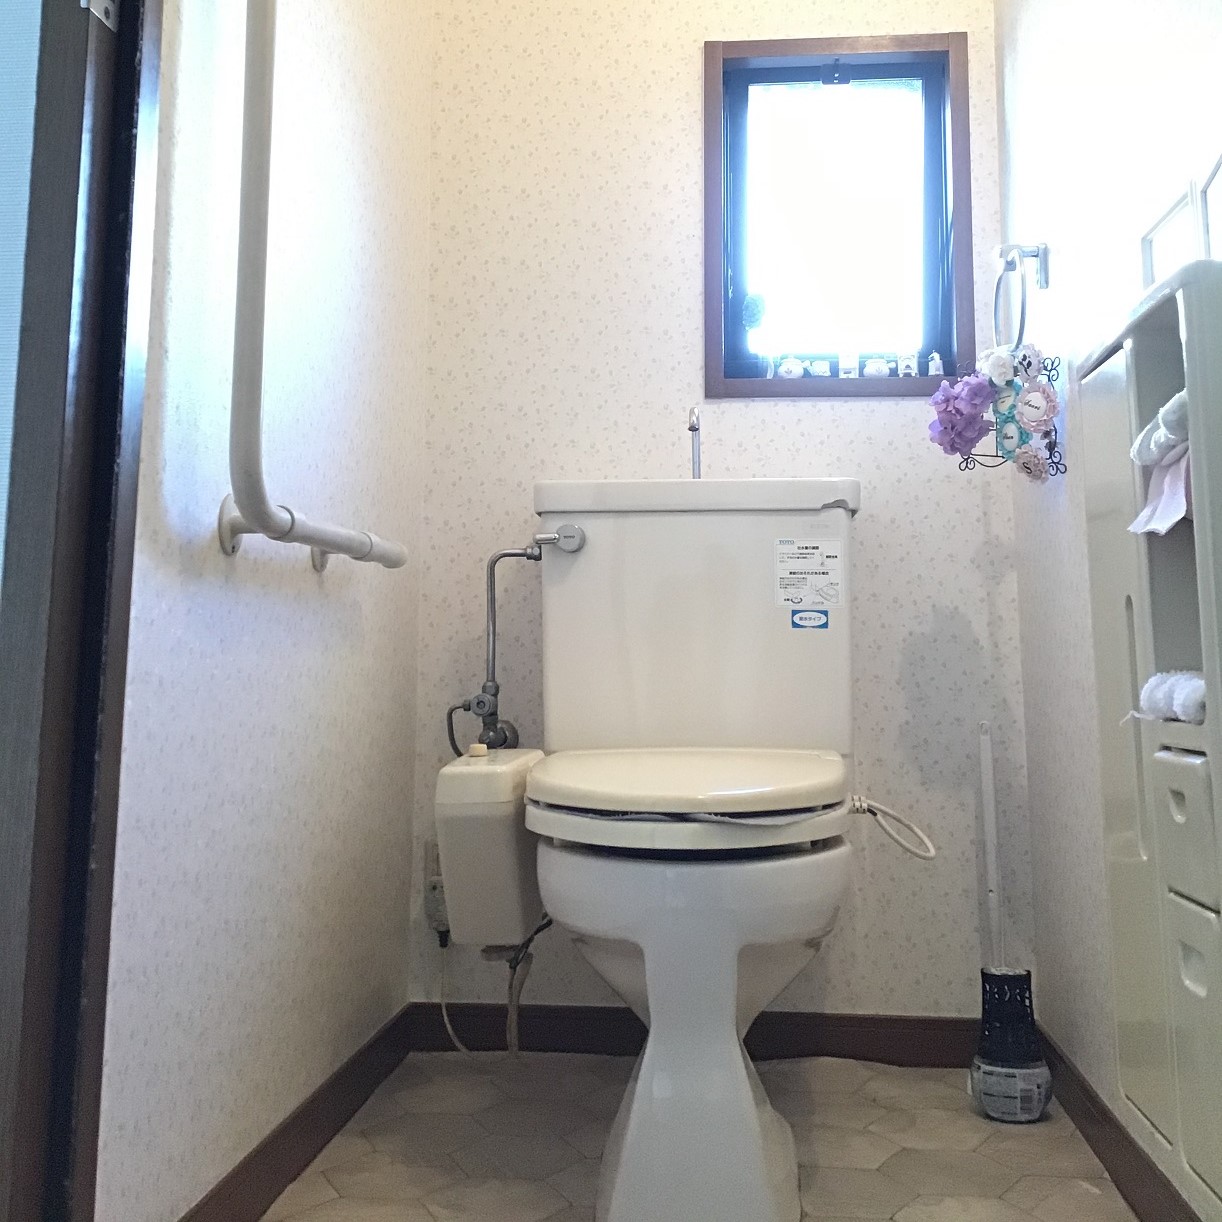 長野市 セリタ トイレ リフォーム